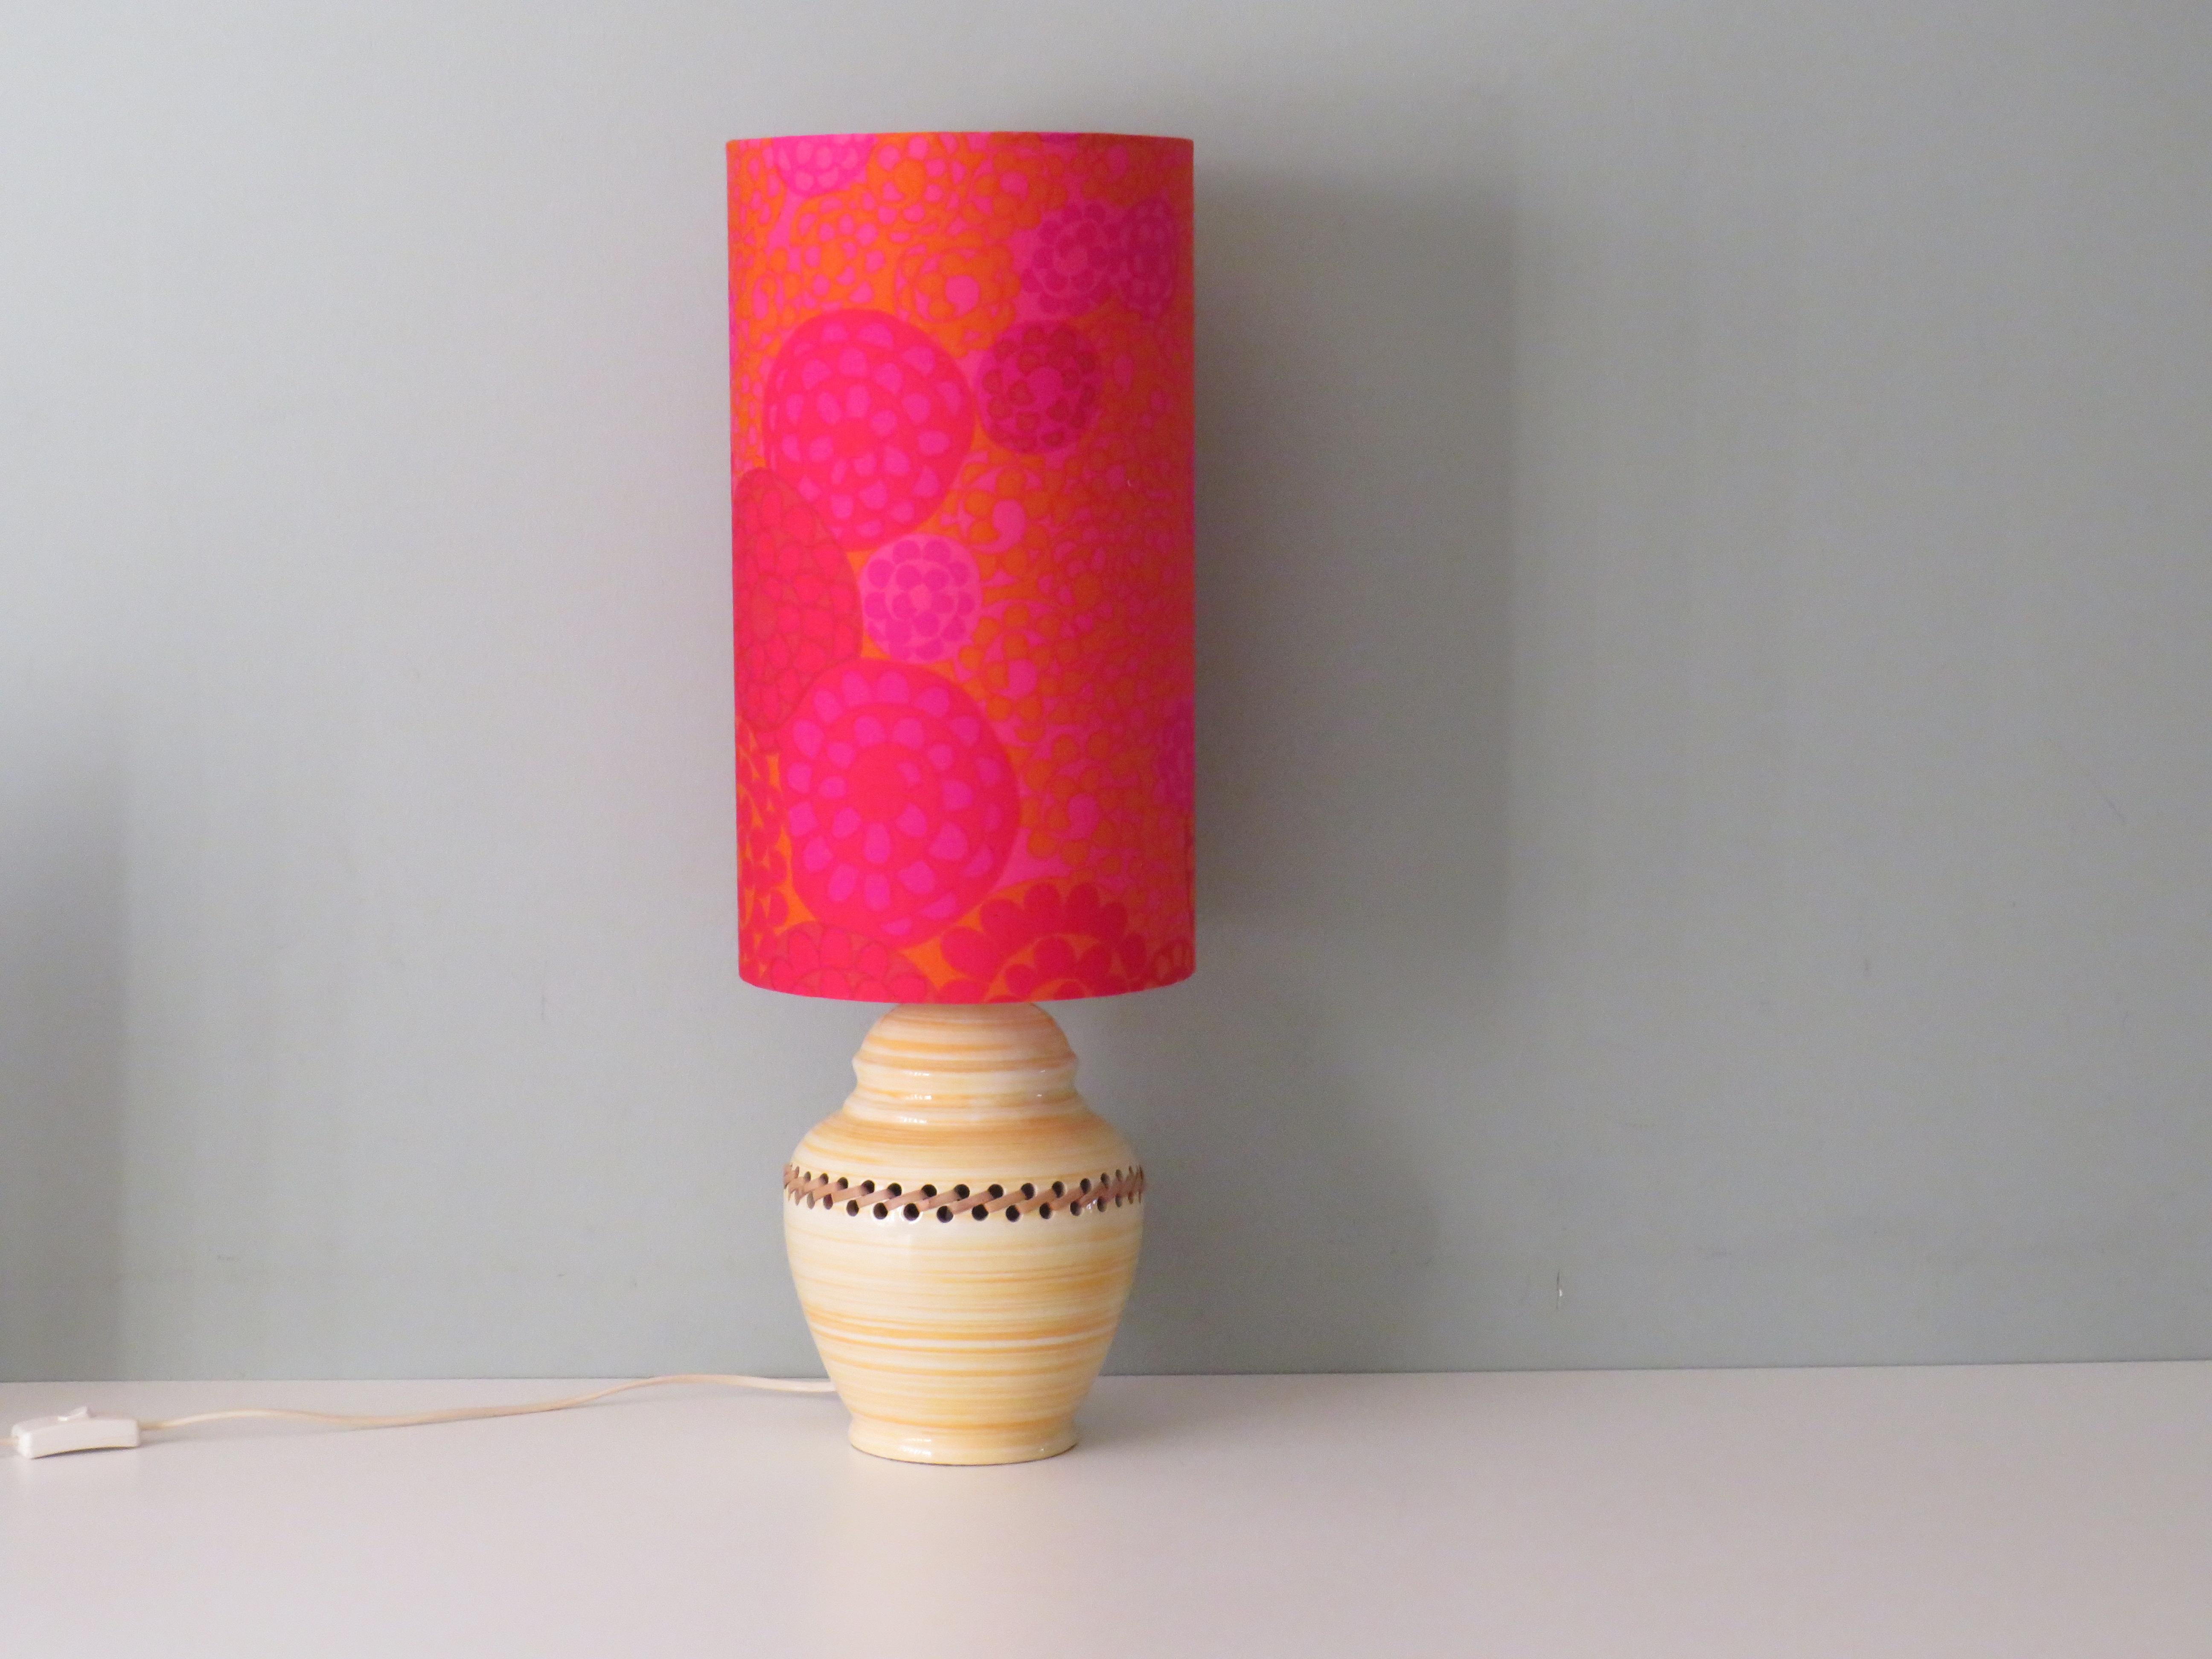 Pied de lampe en céramique émaillée à motif de rayures blanches et jaunes, finition en rotin.
L'abat-jour est fabriqué sur mesure à partir d'un tissu en coton vintage avec un motif floral stylisé dans des tons de jaune, orange, rose et